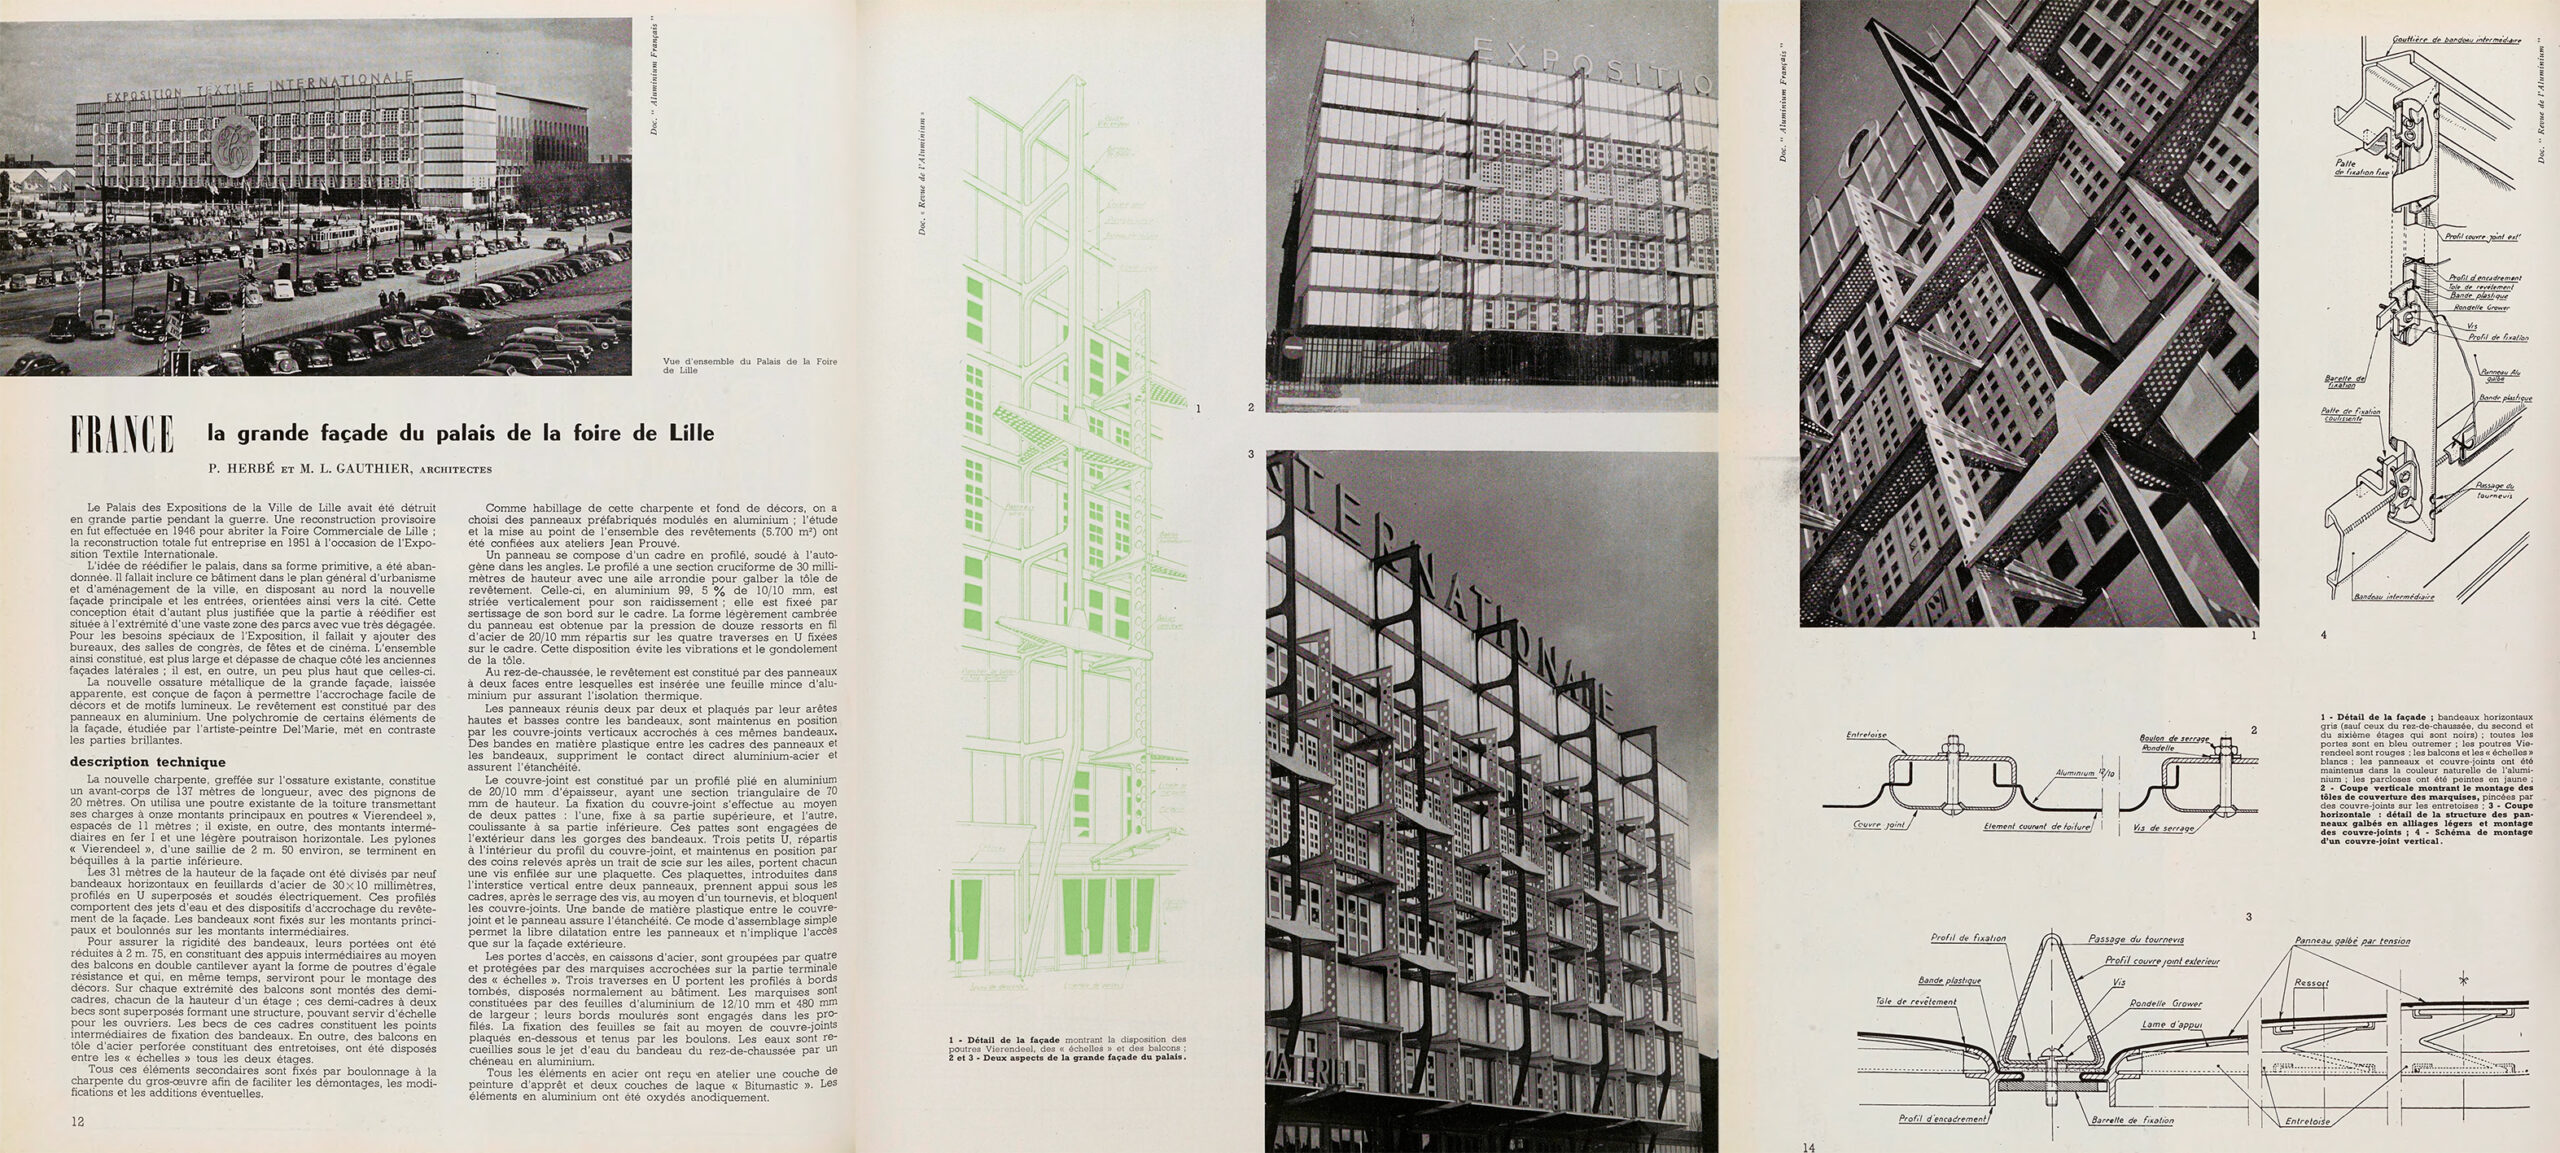 Facades for the Palais de la Foire, Lille, 1950–1951 (P. Herbé, M. L. Gauthier, architect) in <i>Techniques & Architecture</i>, no. 11-12, 1951.